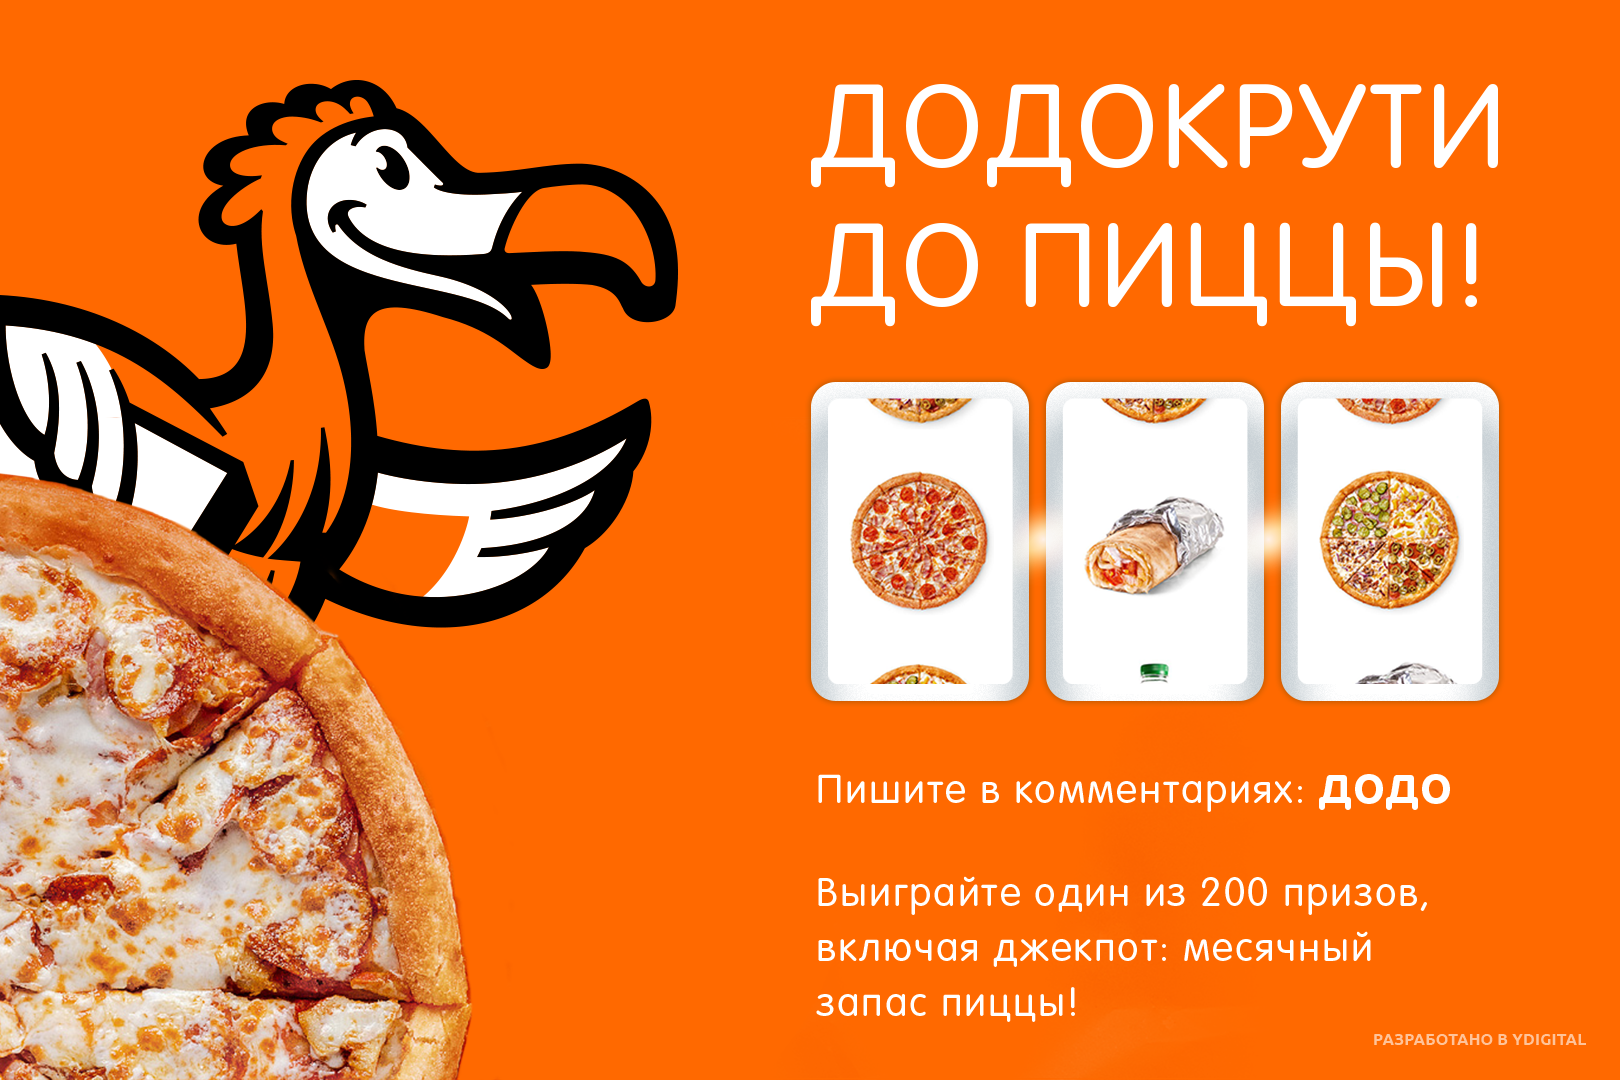 Додо доставка час. Додо пицца реклама. Рекламная листовка Додо пицца. Додо пицца картинки. Баннеры рекламные Додо пиццерии.